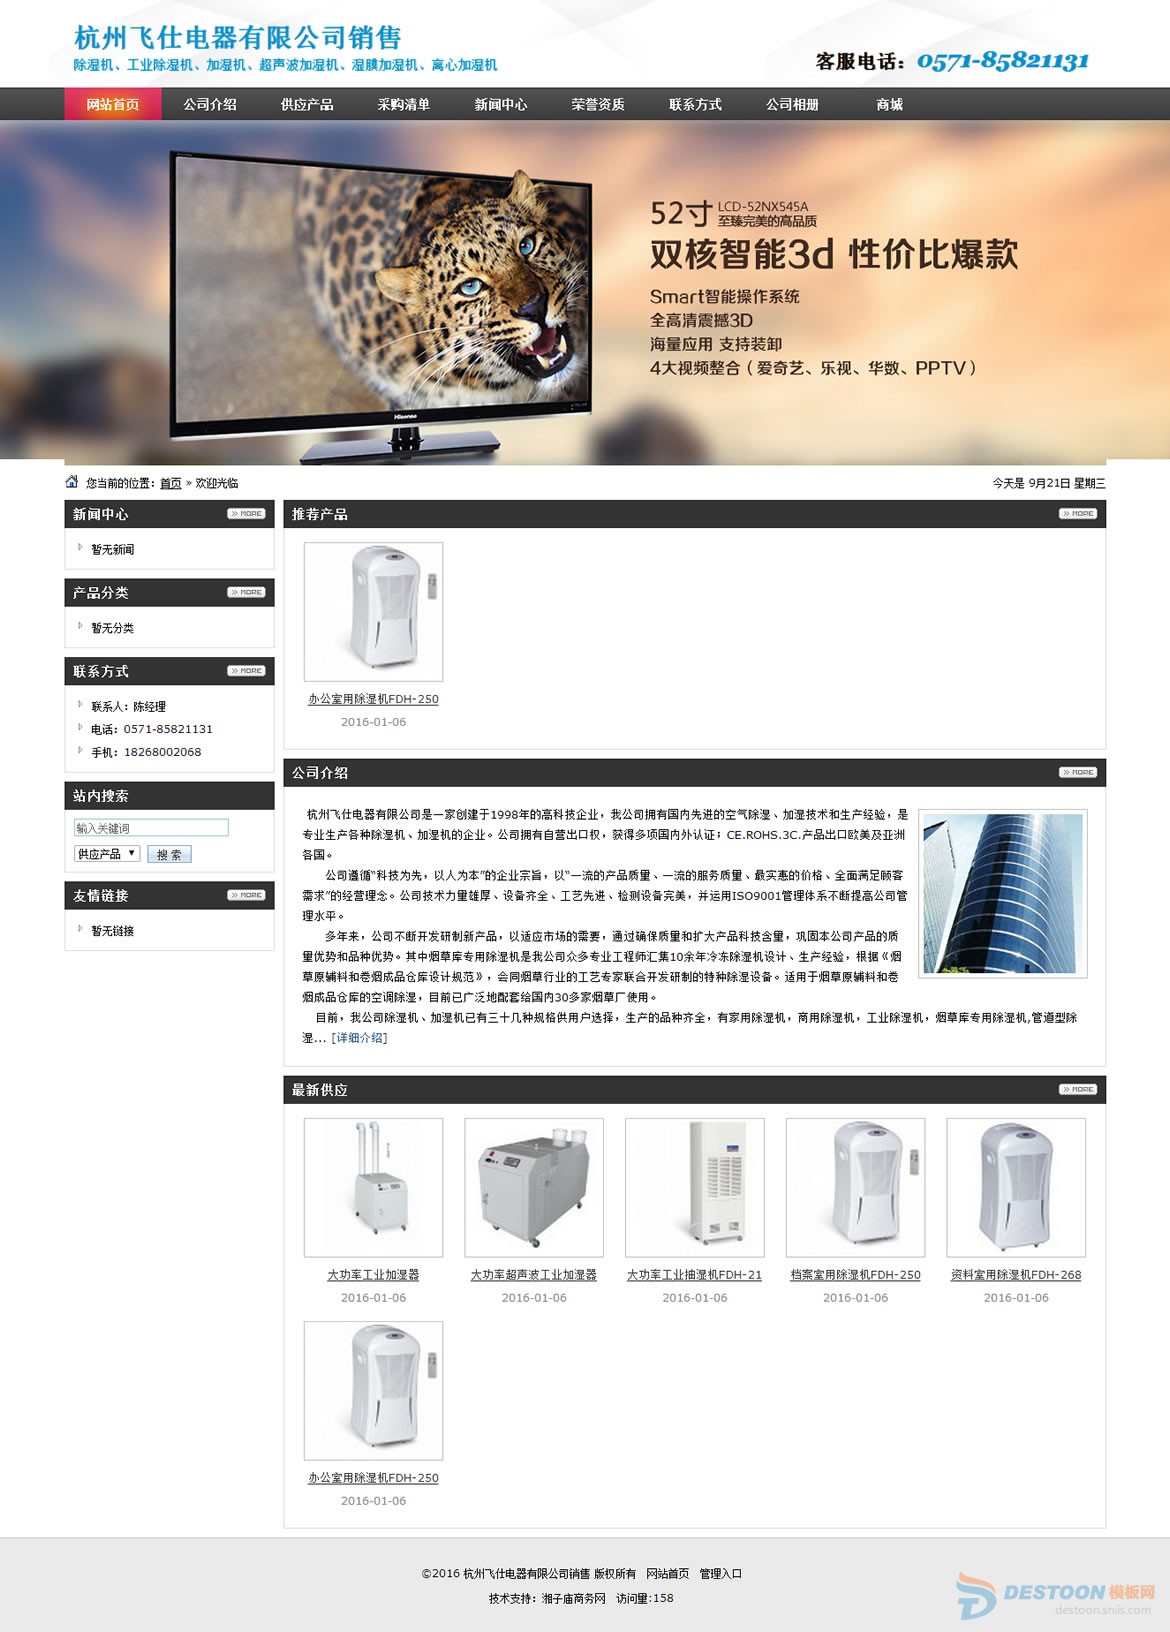 杭州飞仕电器有限公司销售